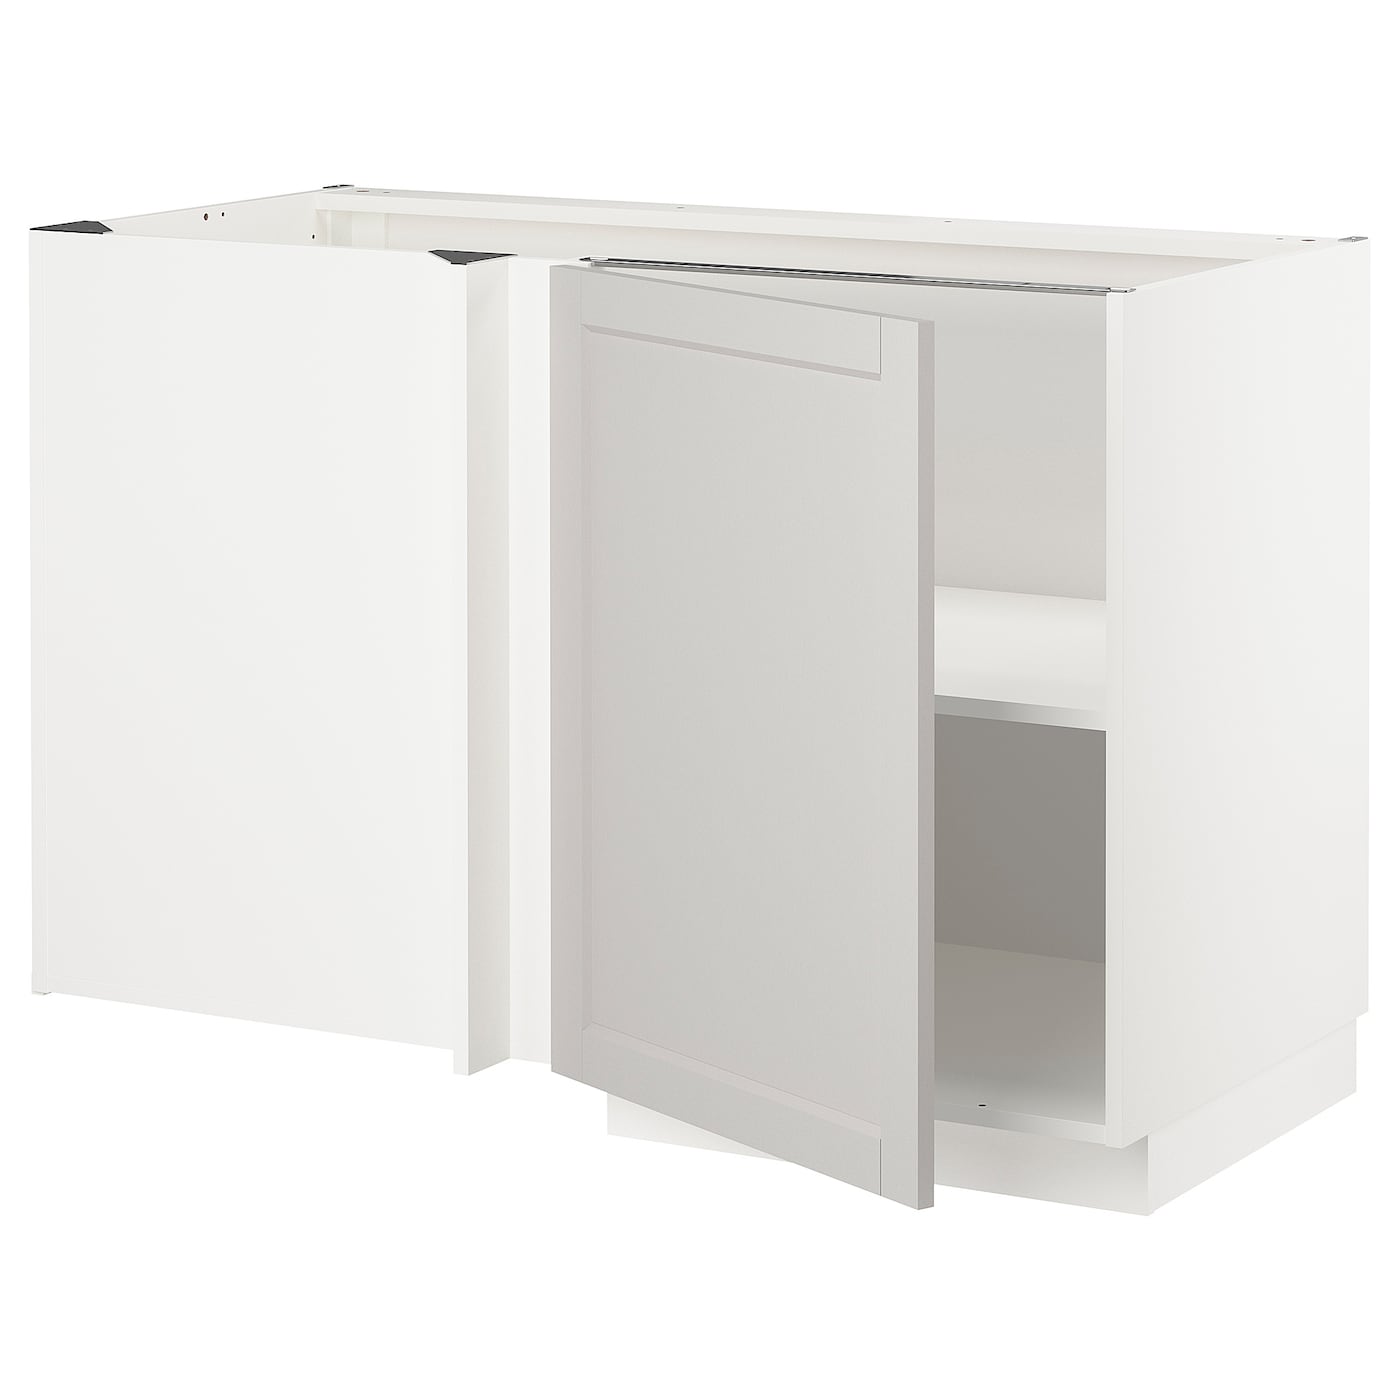 Напольный кухонный шкаф  - IKEA METOD MAXIMERA, 88x67,5x127,5см, белый, МЕТОД МАКСИМЕРА ИКЕА